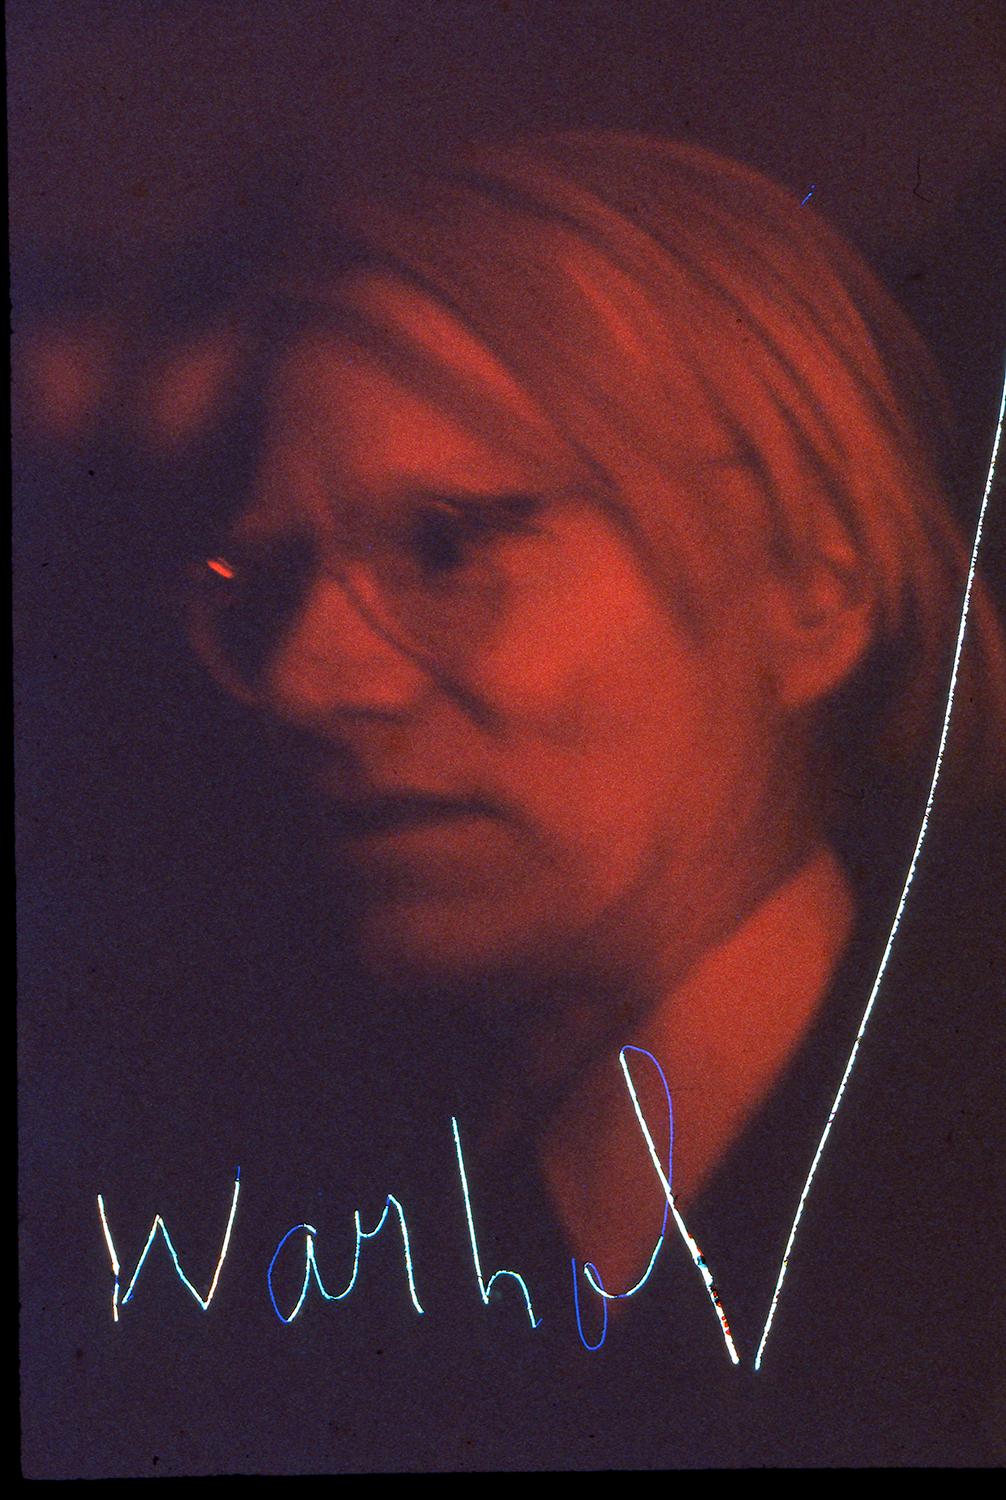 Warhol, Opening Night Studio 54, New York, NY, 1977